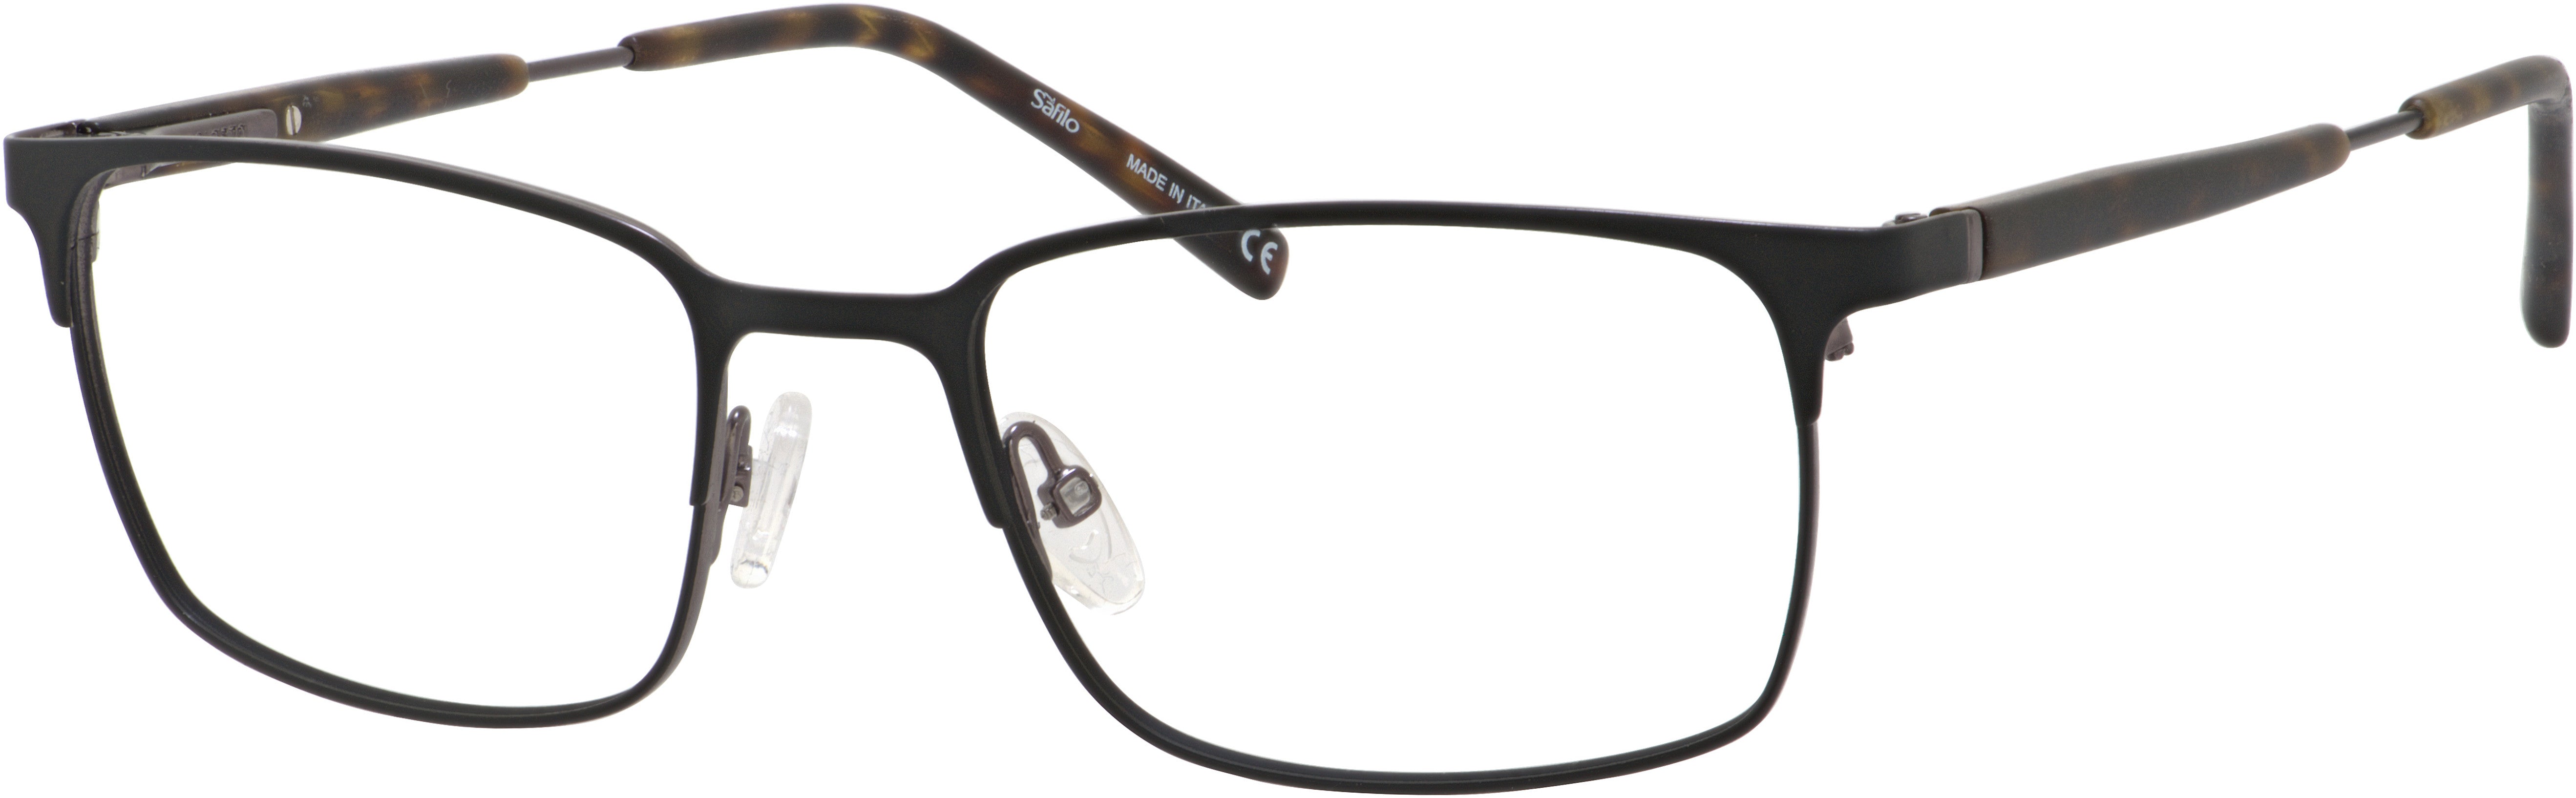  Elasta 7222 Rectangular Eyeglasses 0TI7-0TI7  Ruthenium Matte Black (00 Demo Lens)